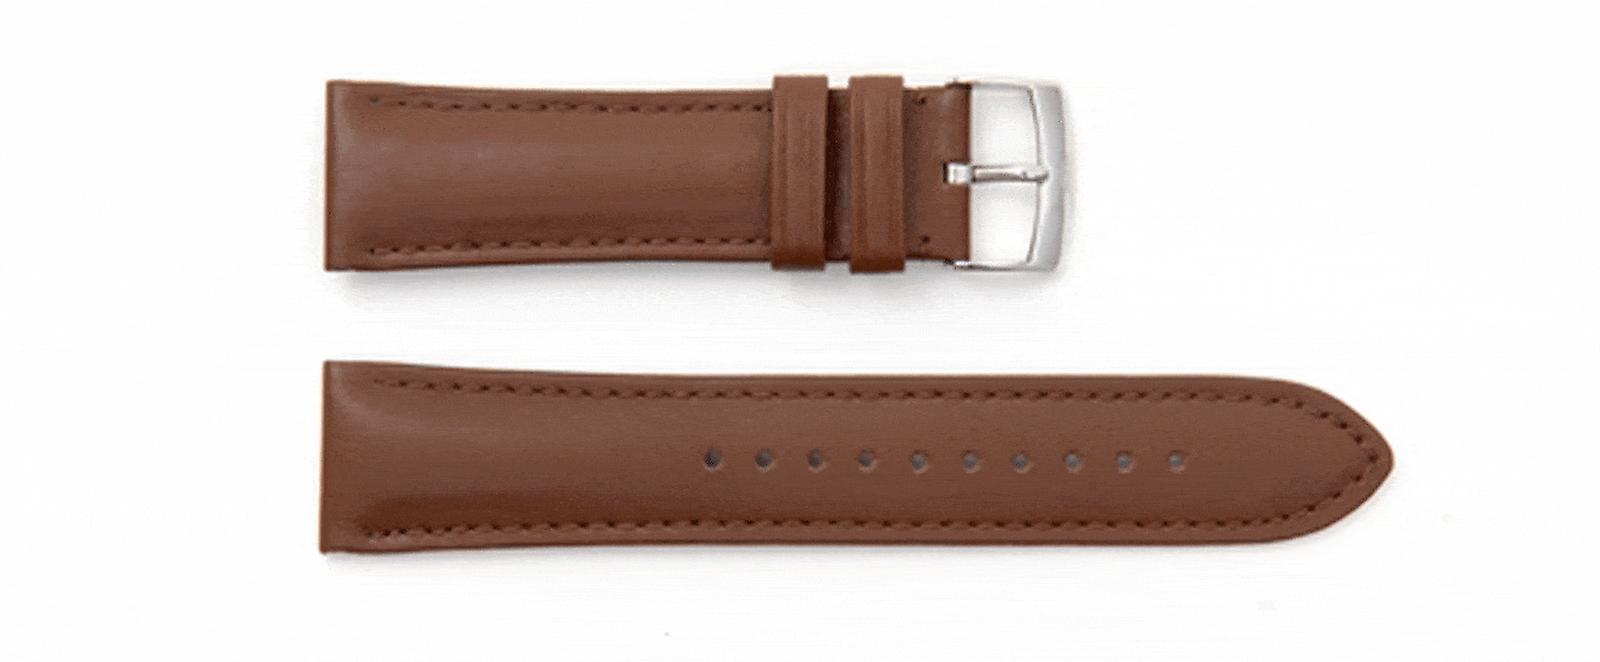 Emporio Armani Renato Silver Dial Brown Leather Strap Watch For Men - AR2463